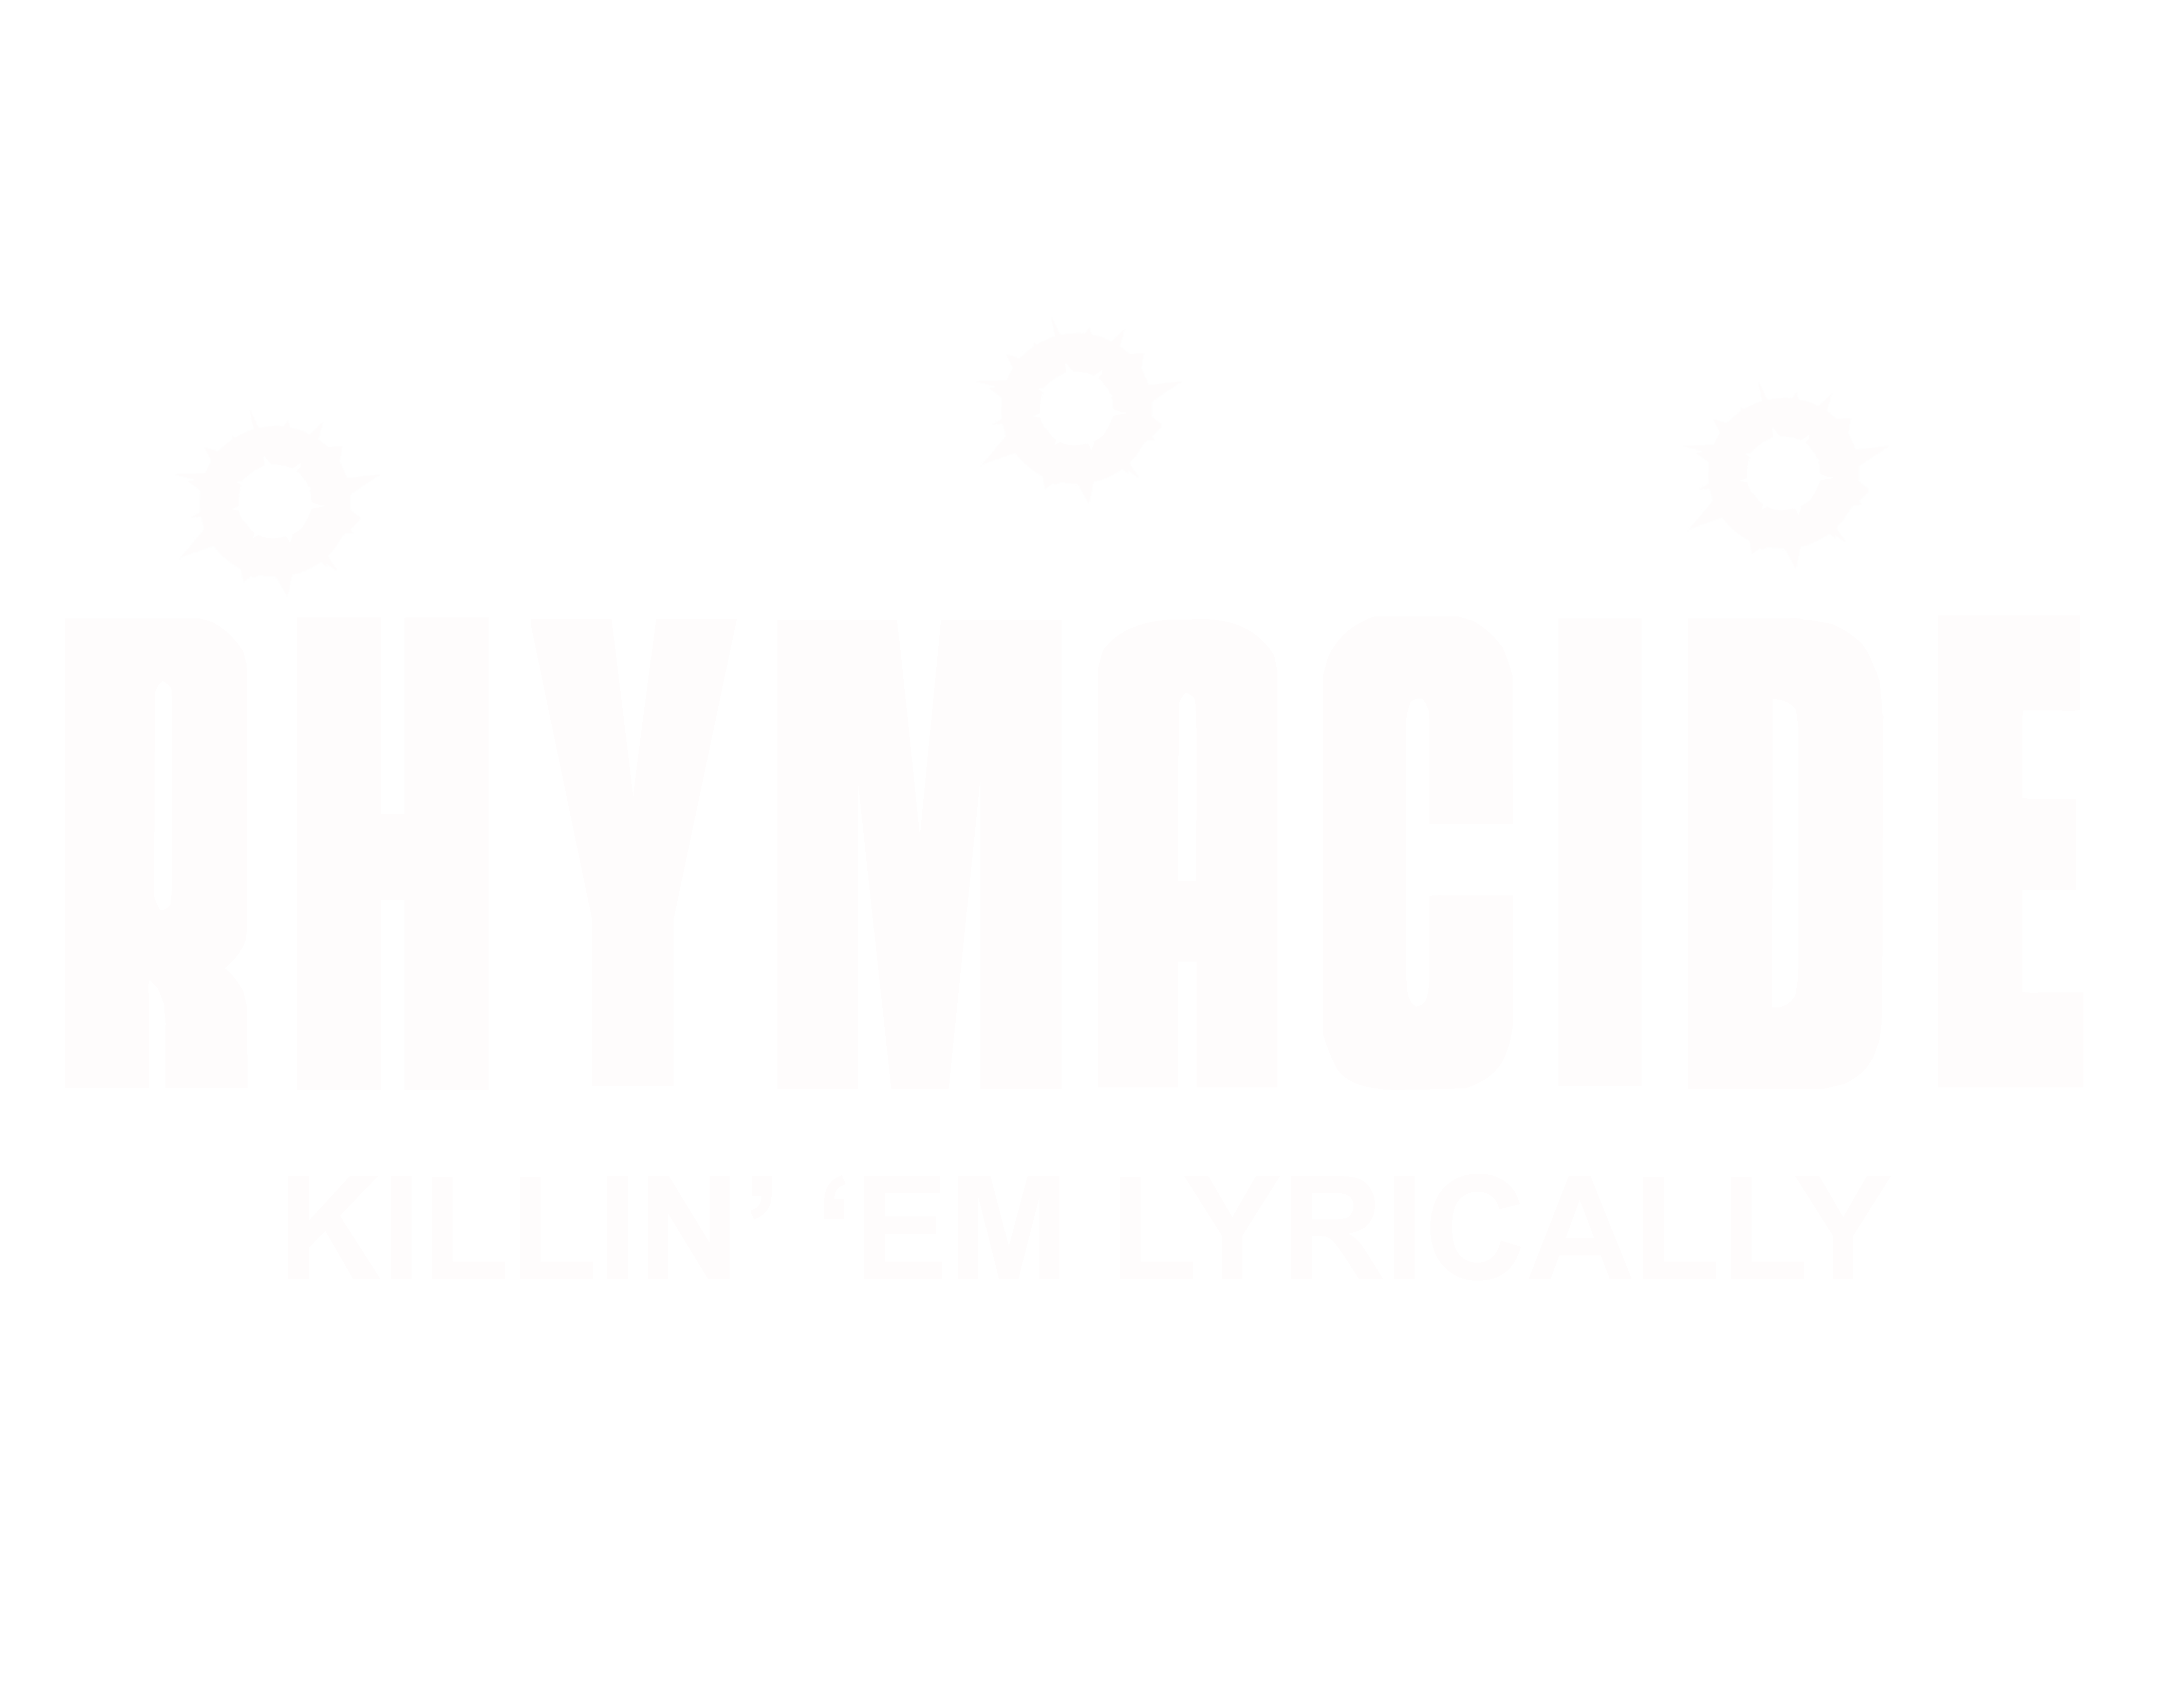 rhymacide